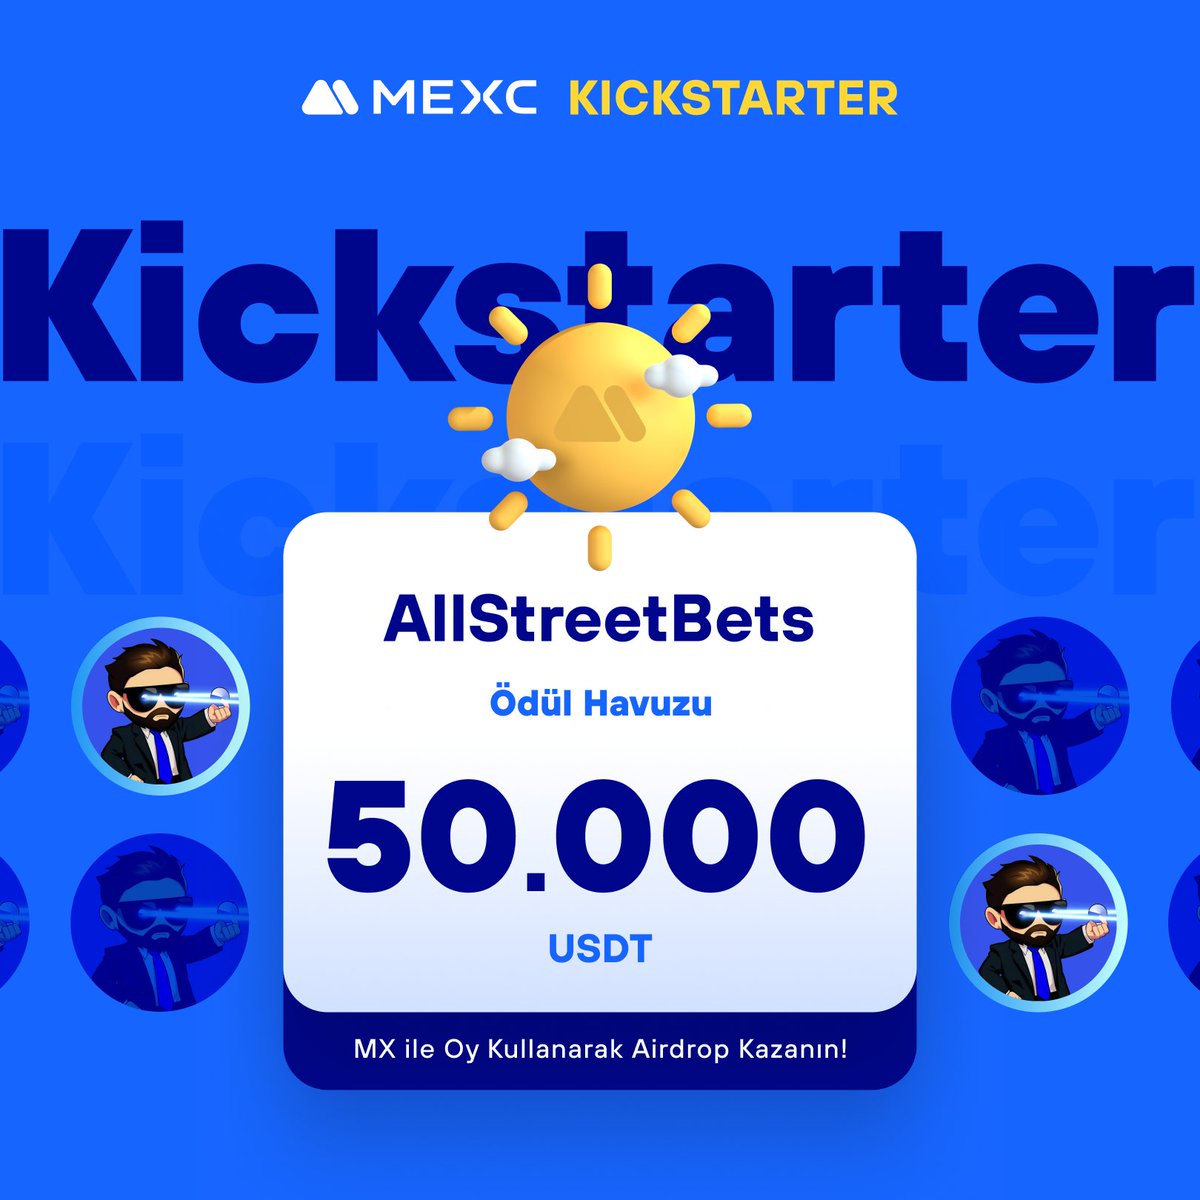 🚀 #MEXCKickstarter - @AllStreetBetsV1 $BETS Projesi için Oy Kullanın, 50.000 $USDT Airdrop Kazanın! 

🗳️ Oylama Tarihi: 29 Nisan 2024 14.00 - 30 Nisan 2024 13.50

📌 Ayrıntılar: mexctr.info/4dbVqsp

#MEXCTürkiye #MXToken #MX #BTC